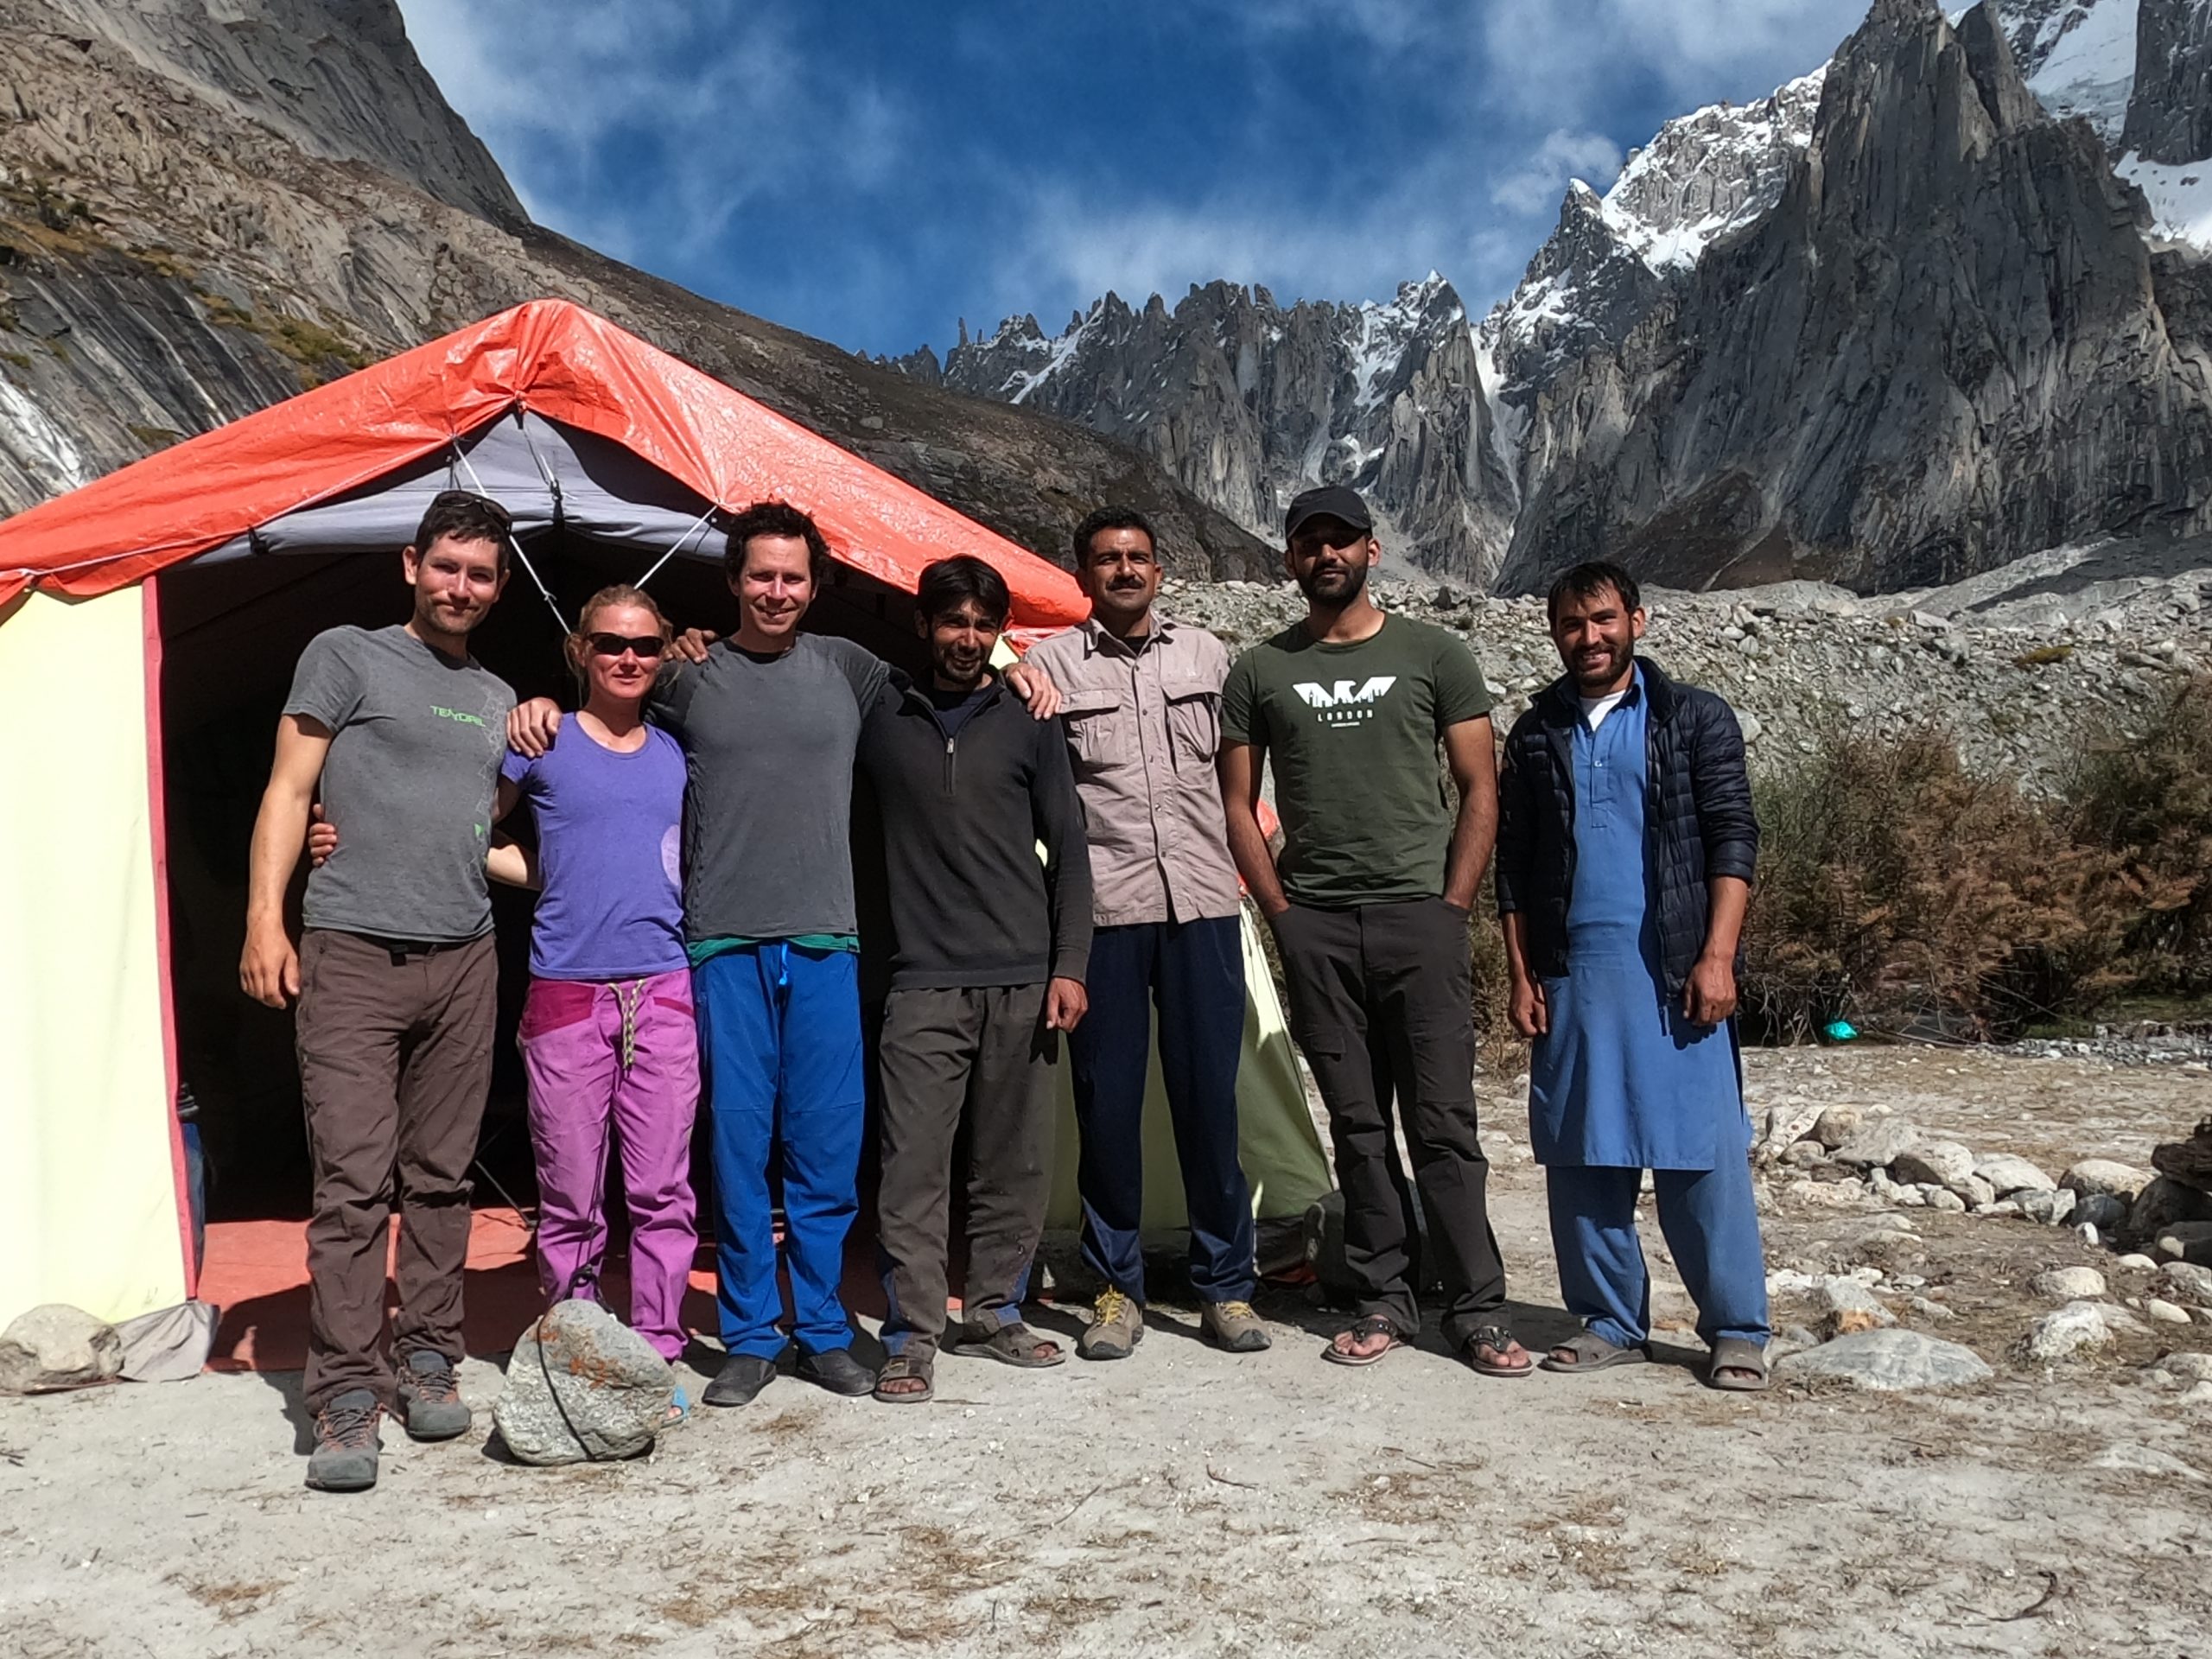 Команда экспедиции на К6 осенью 2020 года: Джефф Райт (Jeff Wright) (крайний слева) с Прити Райт (Priti Wright), Колином Хейли, пакистанскими носильщиками и сотрудниками базового лагеря. Фото Jeff Wright.